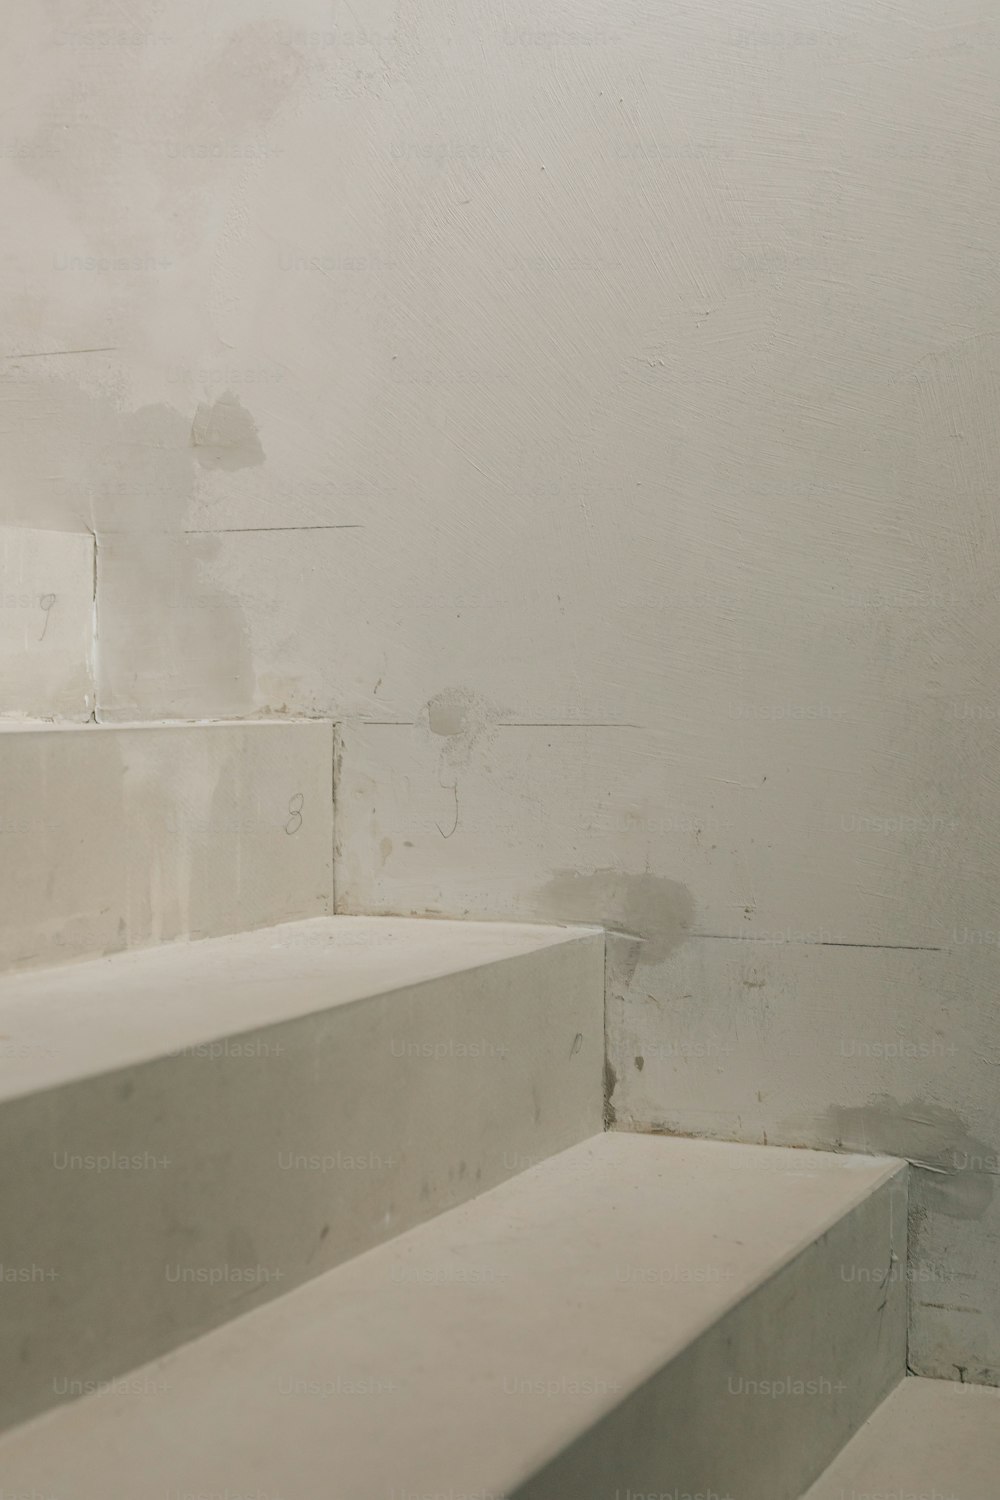 un escalier blanc menant à un mur blanc